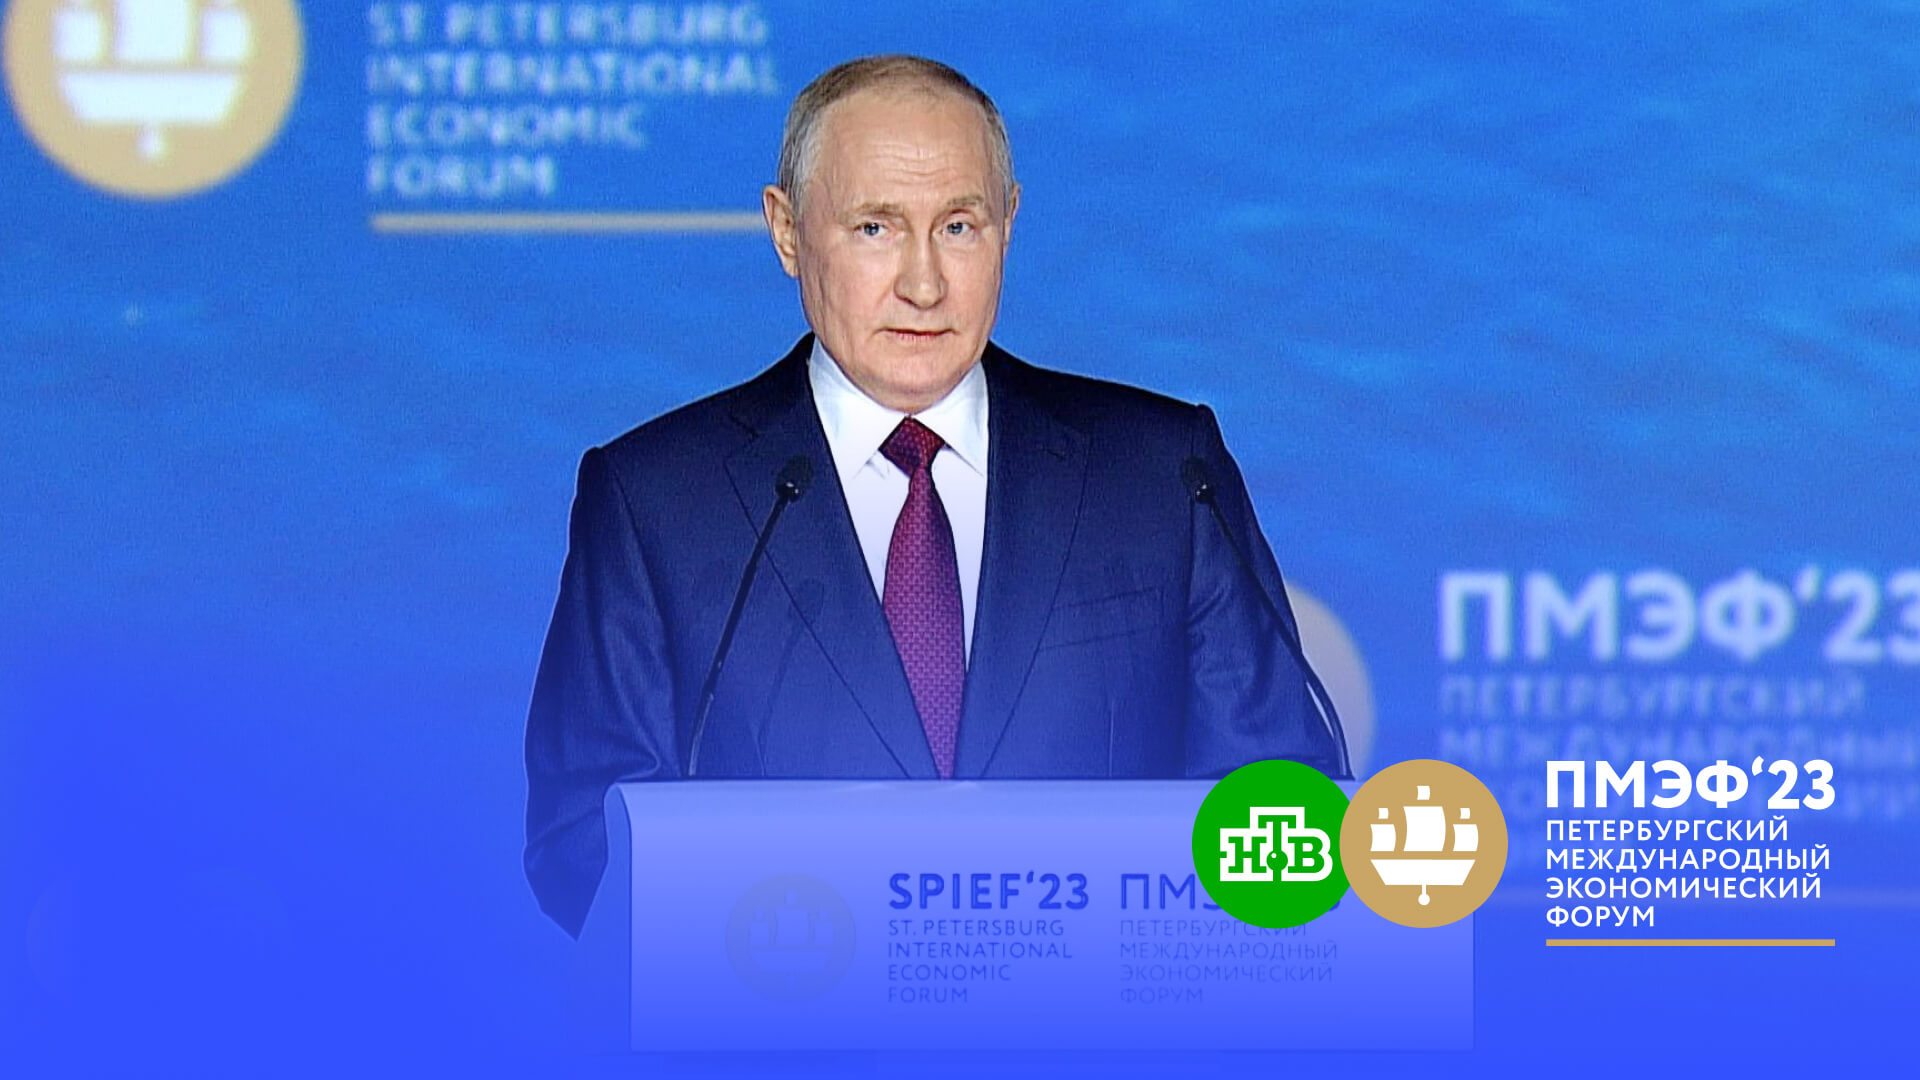 Отказ от нефтегазовой «иглы»: Путин заявил, что эта тенденция набирает обороты